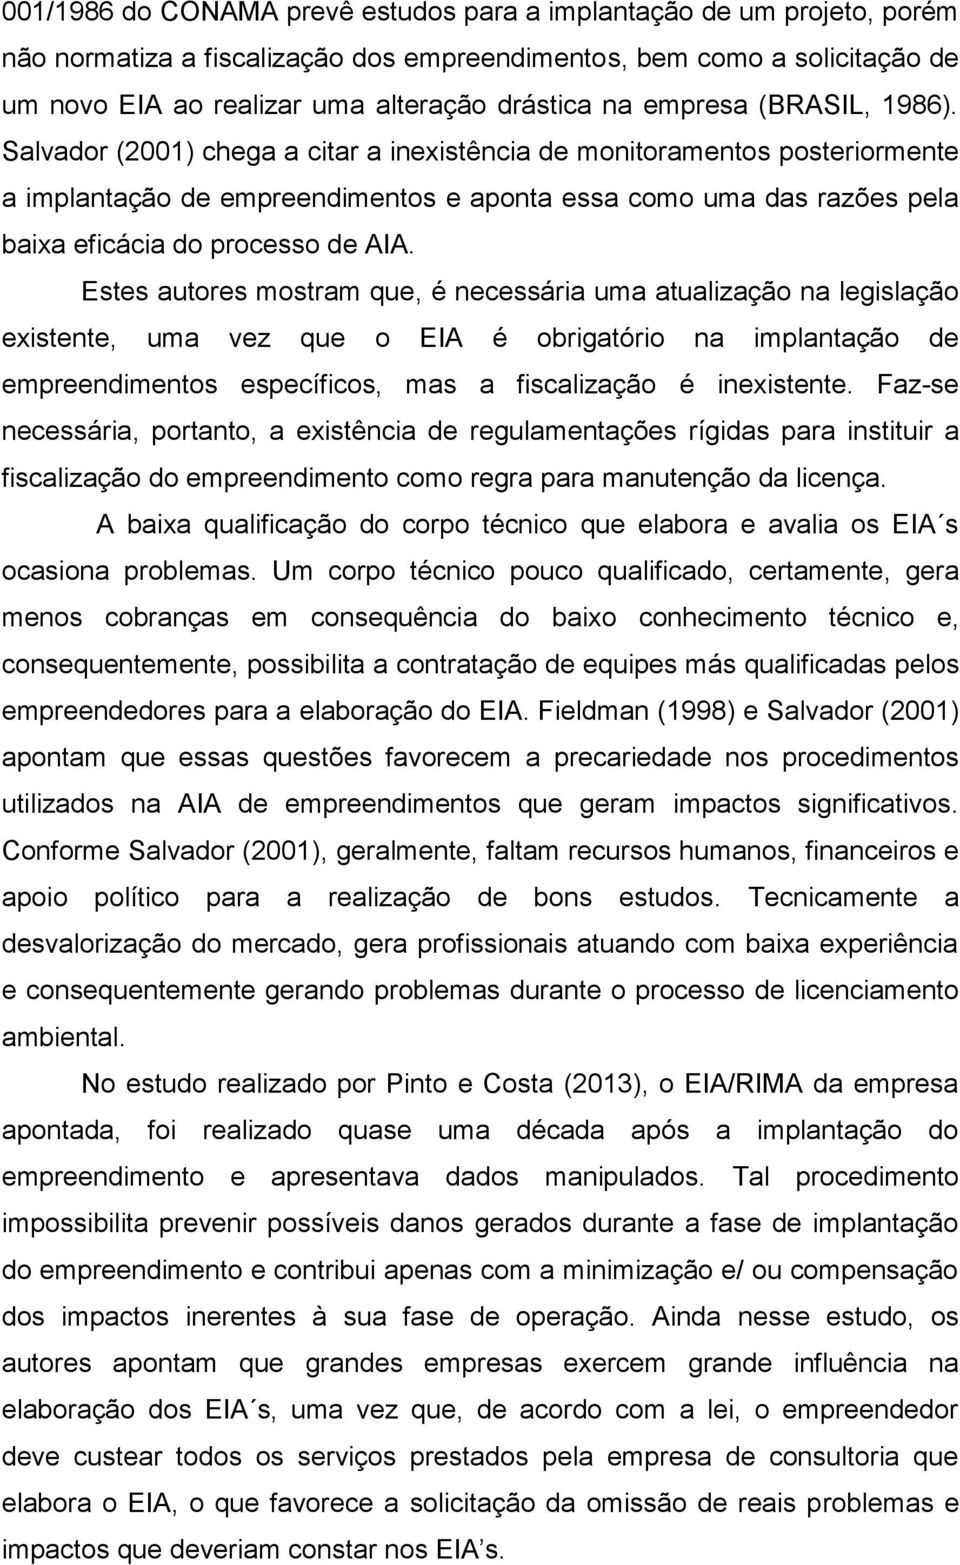 Salvador (2001) chega a citar a inexistência de monitoramentos posteriormente a implantação de empreendimentos e aponta essa como uma das razões pela baixa eficácia do processo de AIA.